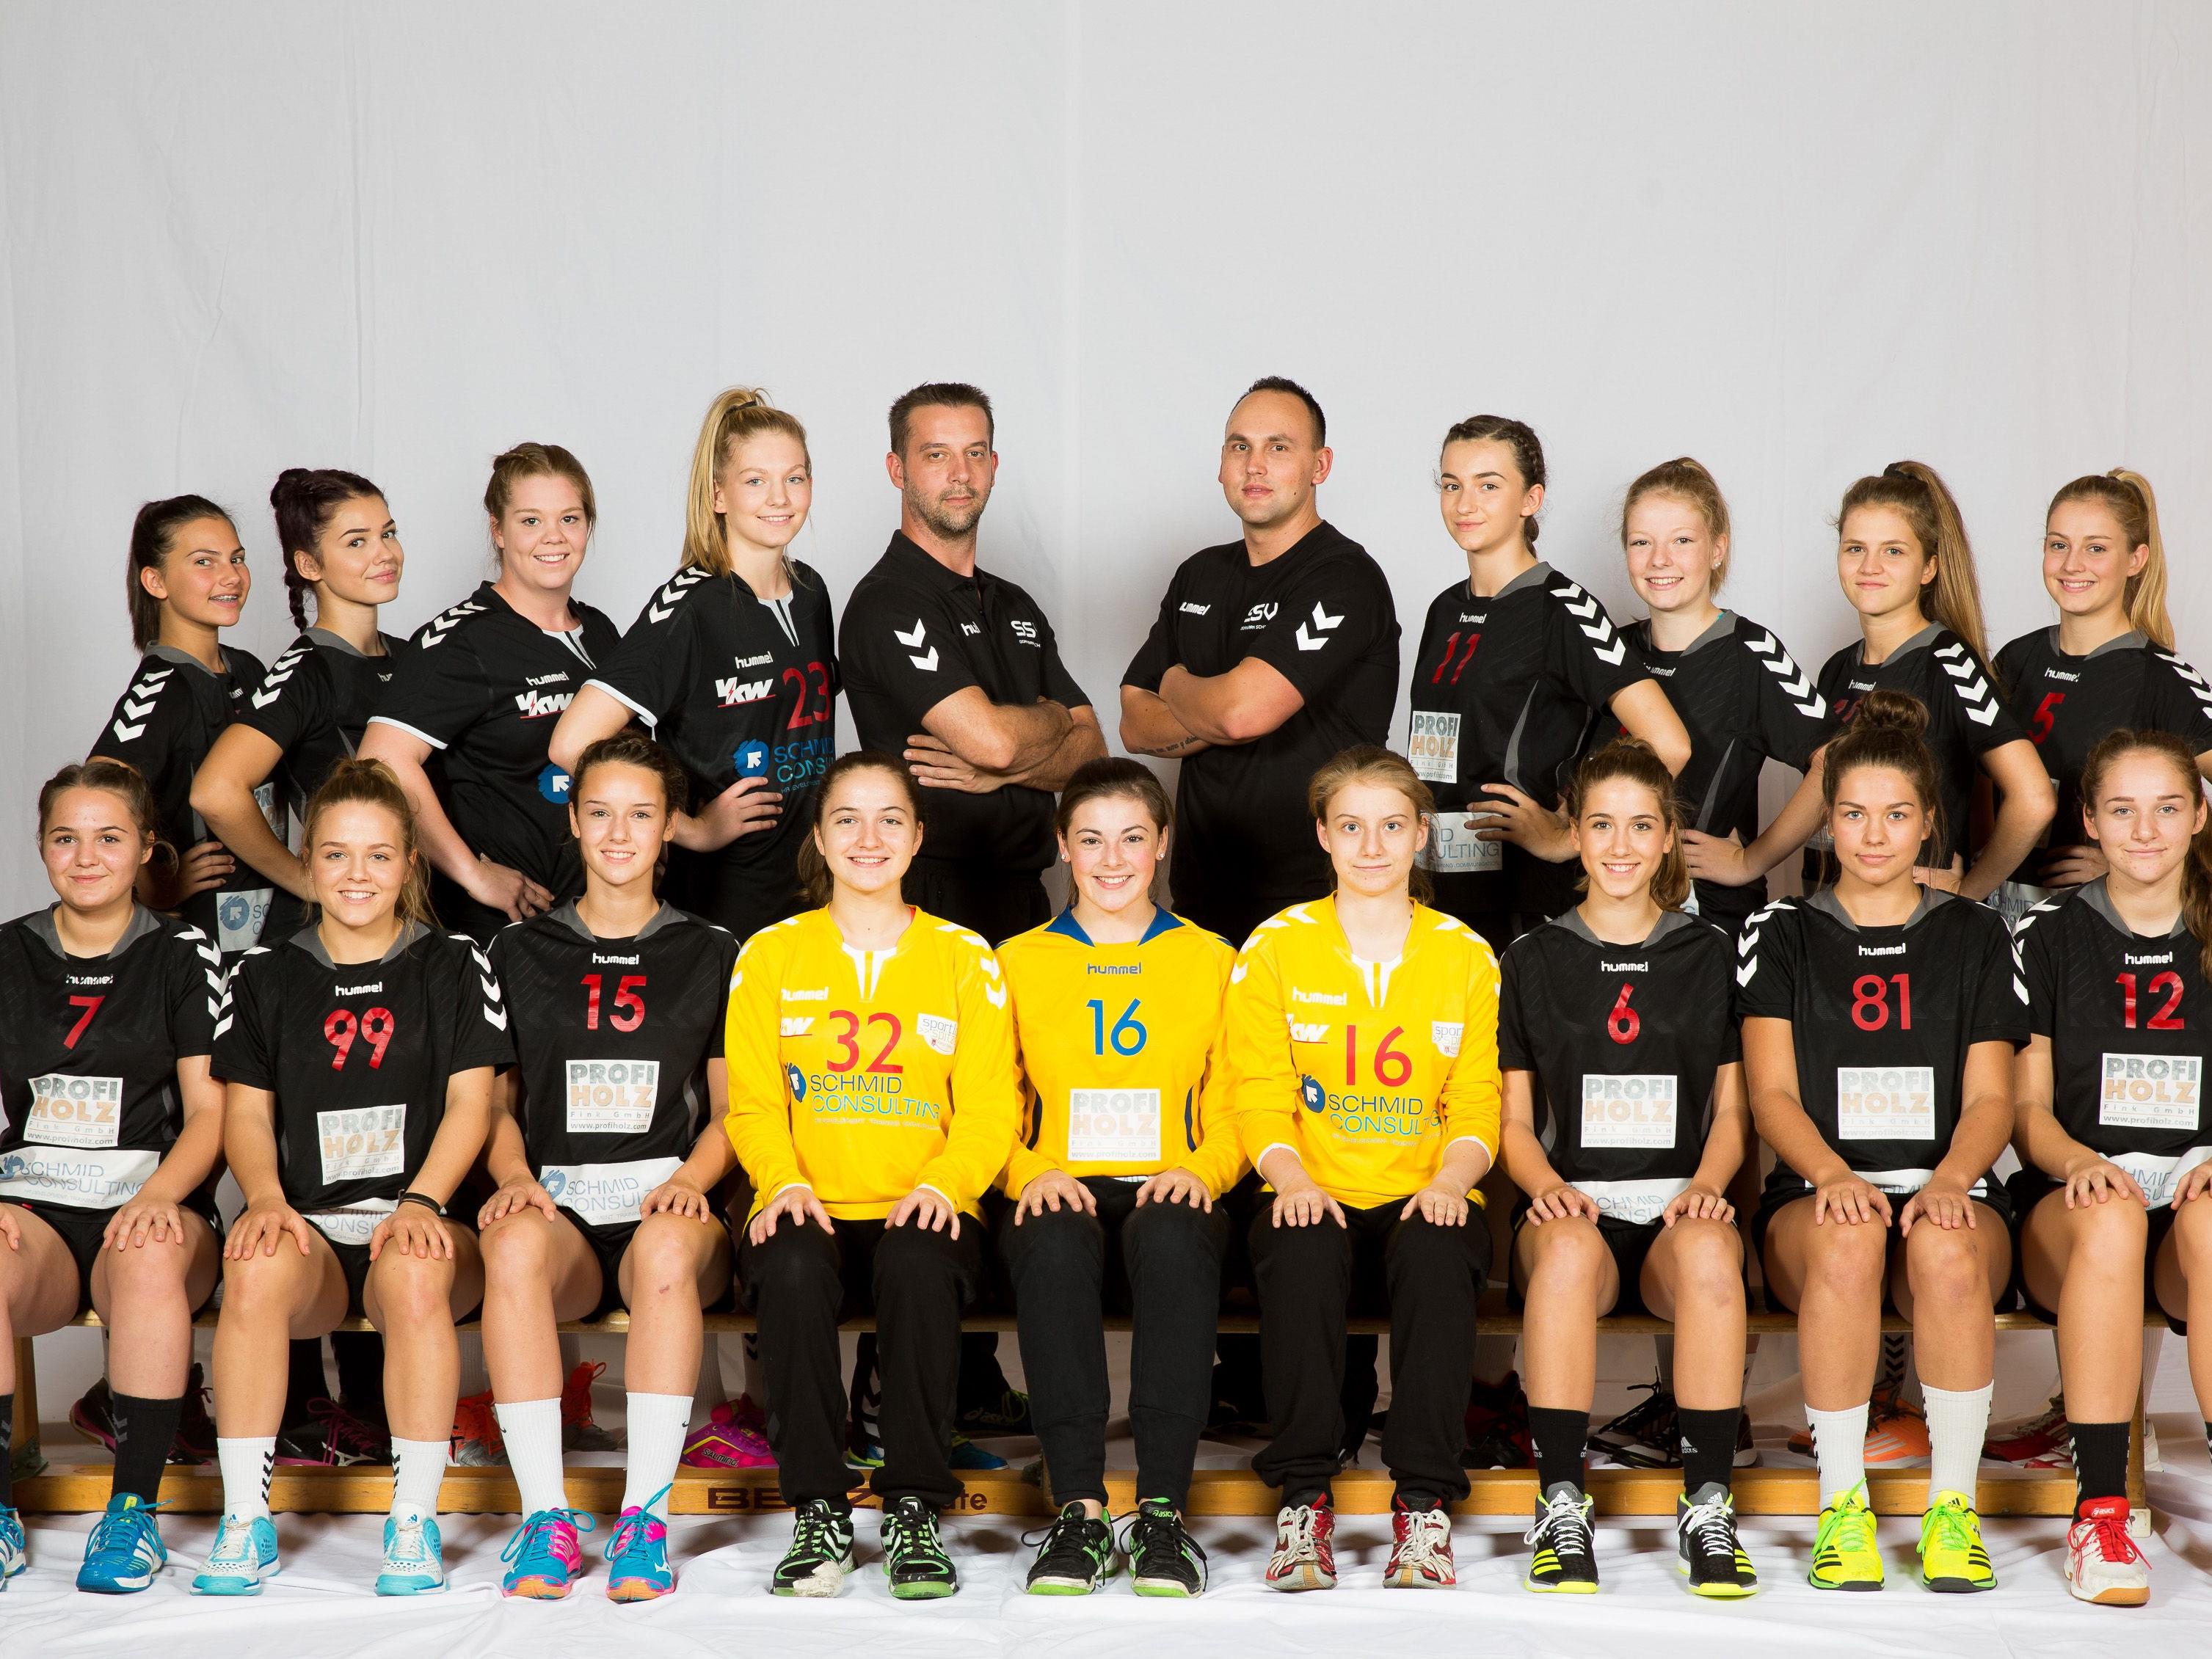 Das erfolgreiche U16 Team des SSV Dornbirn Schoren machte am Wochenende den Auftakt in Sache Meistertitel sichern.